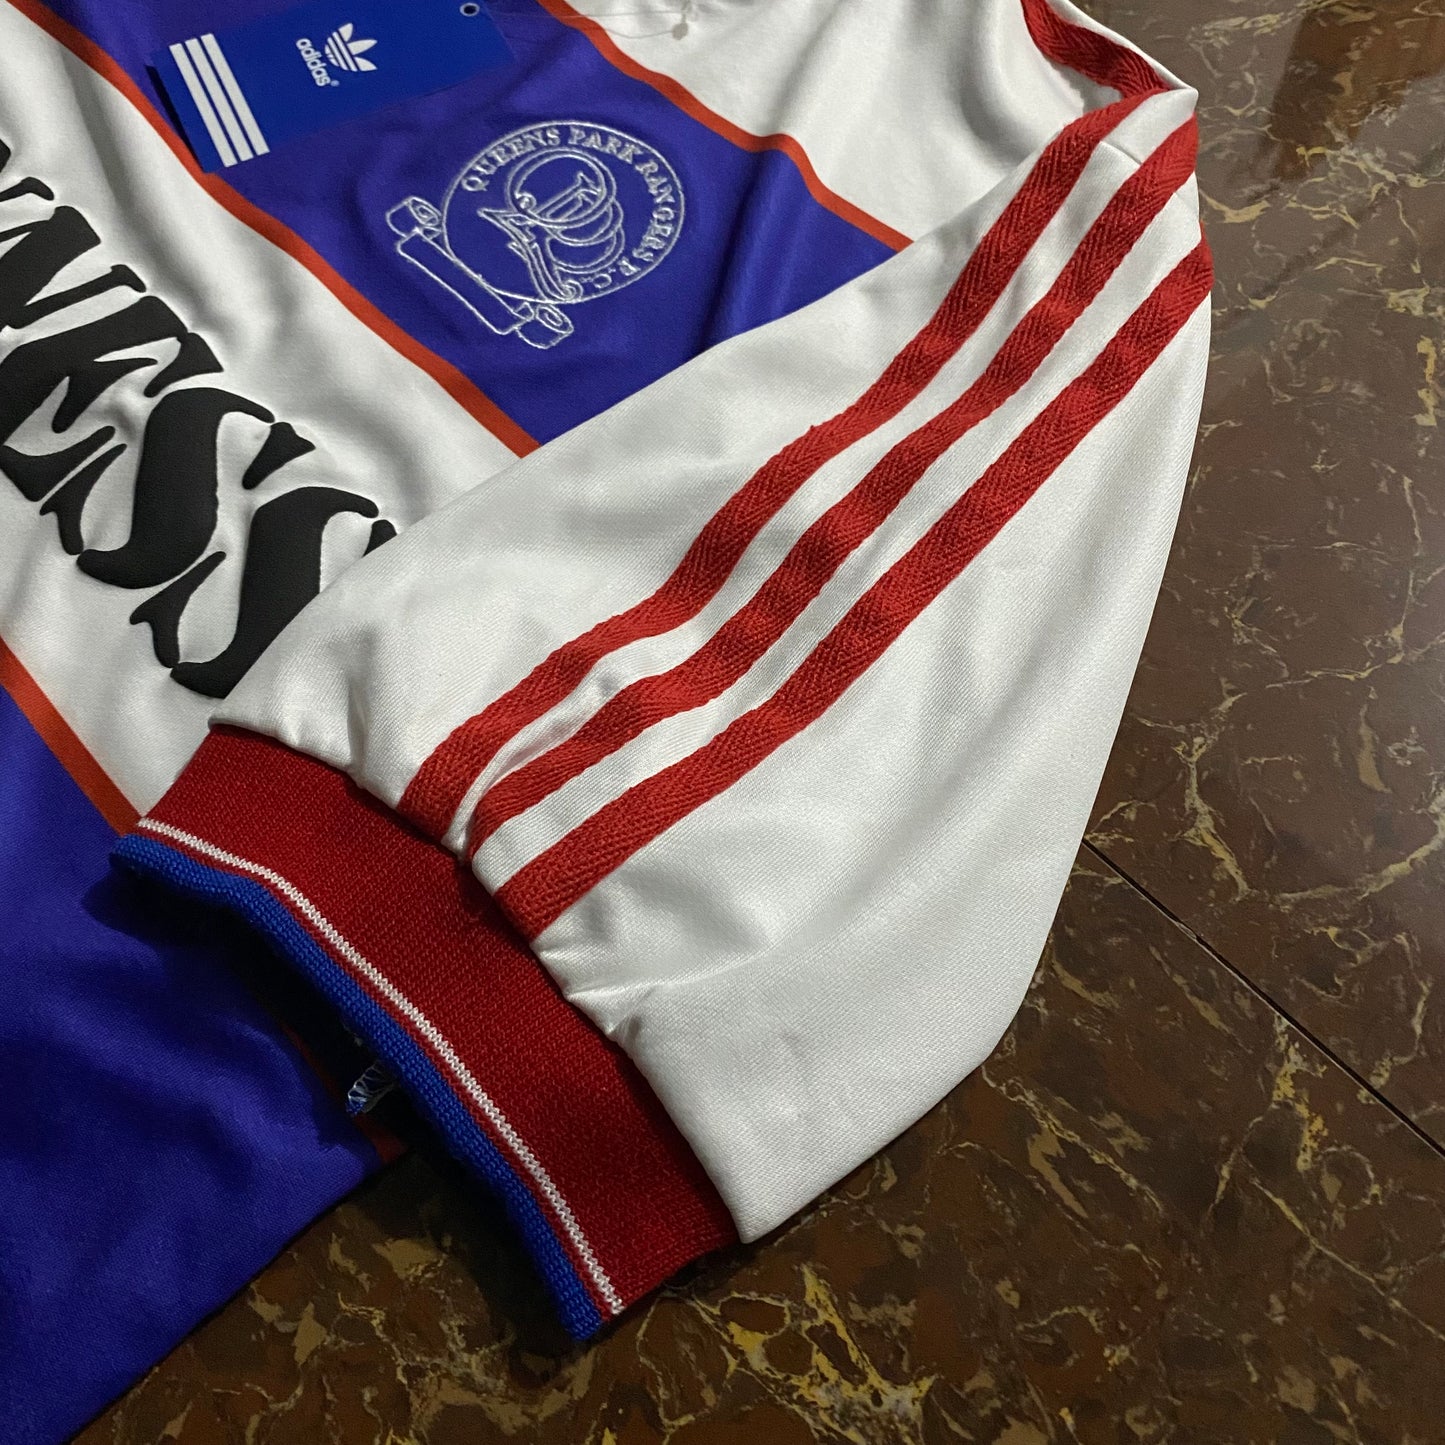 1985/86 Queens Park Rangers Home Shirt